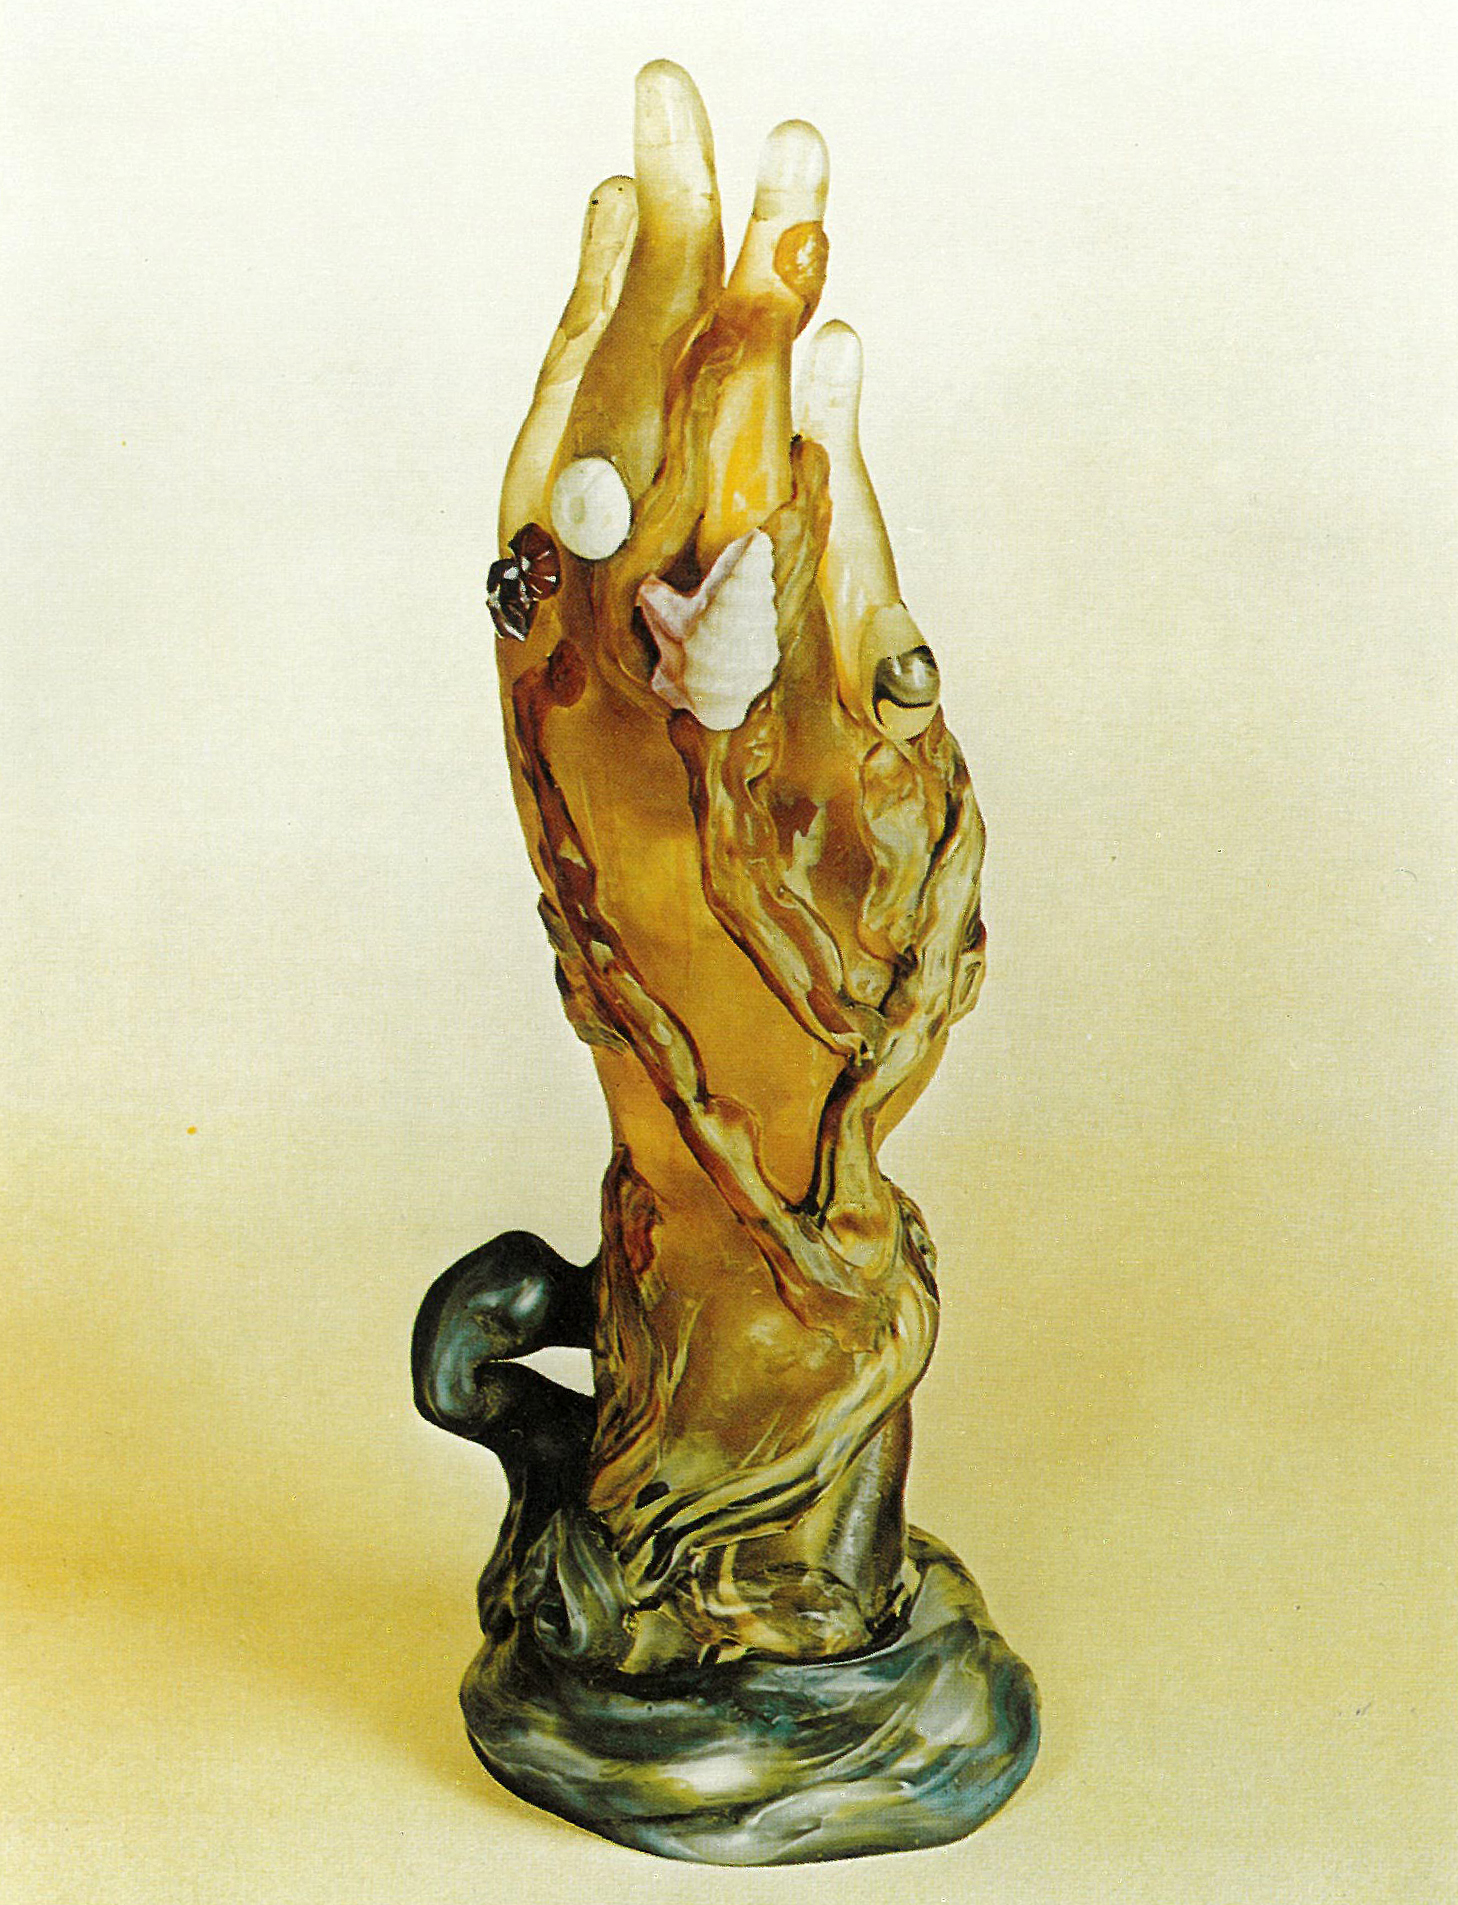 玻璃手，加莱（Émile Gallé），1900；在一只褐色玻璃手上展示神经、海洋的形状